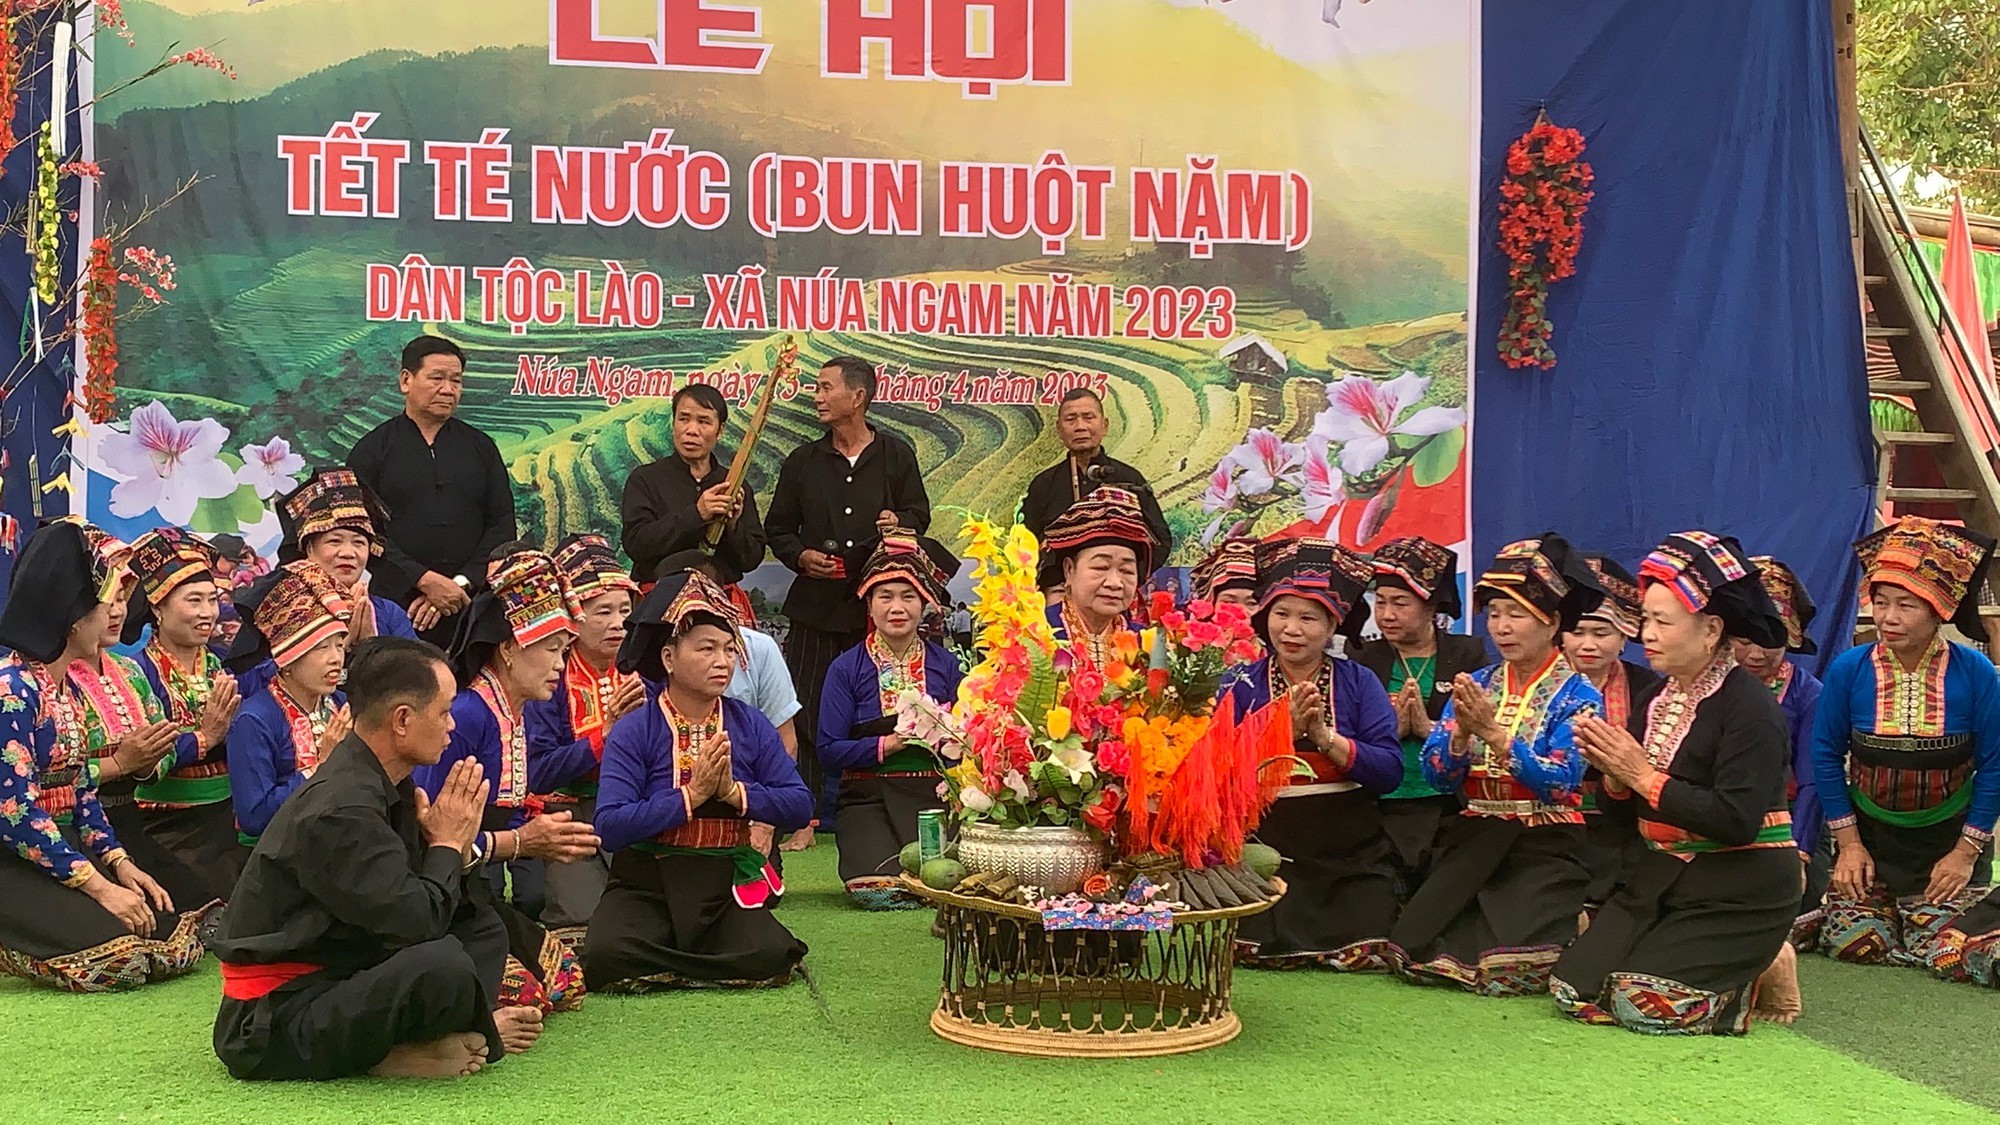 Đặc sắc “Tết té nước” dân tộc Lào ở Điện Biên - Ảnh 1.